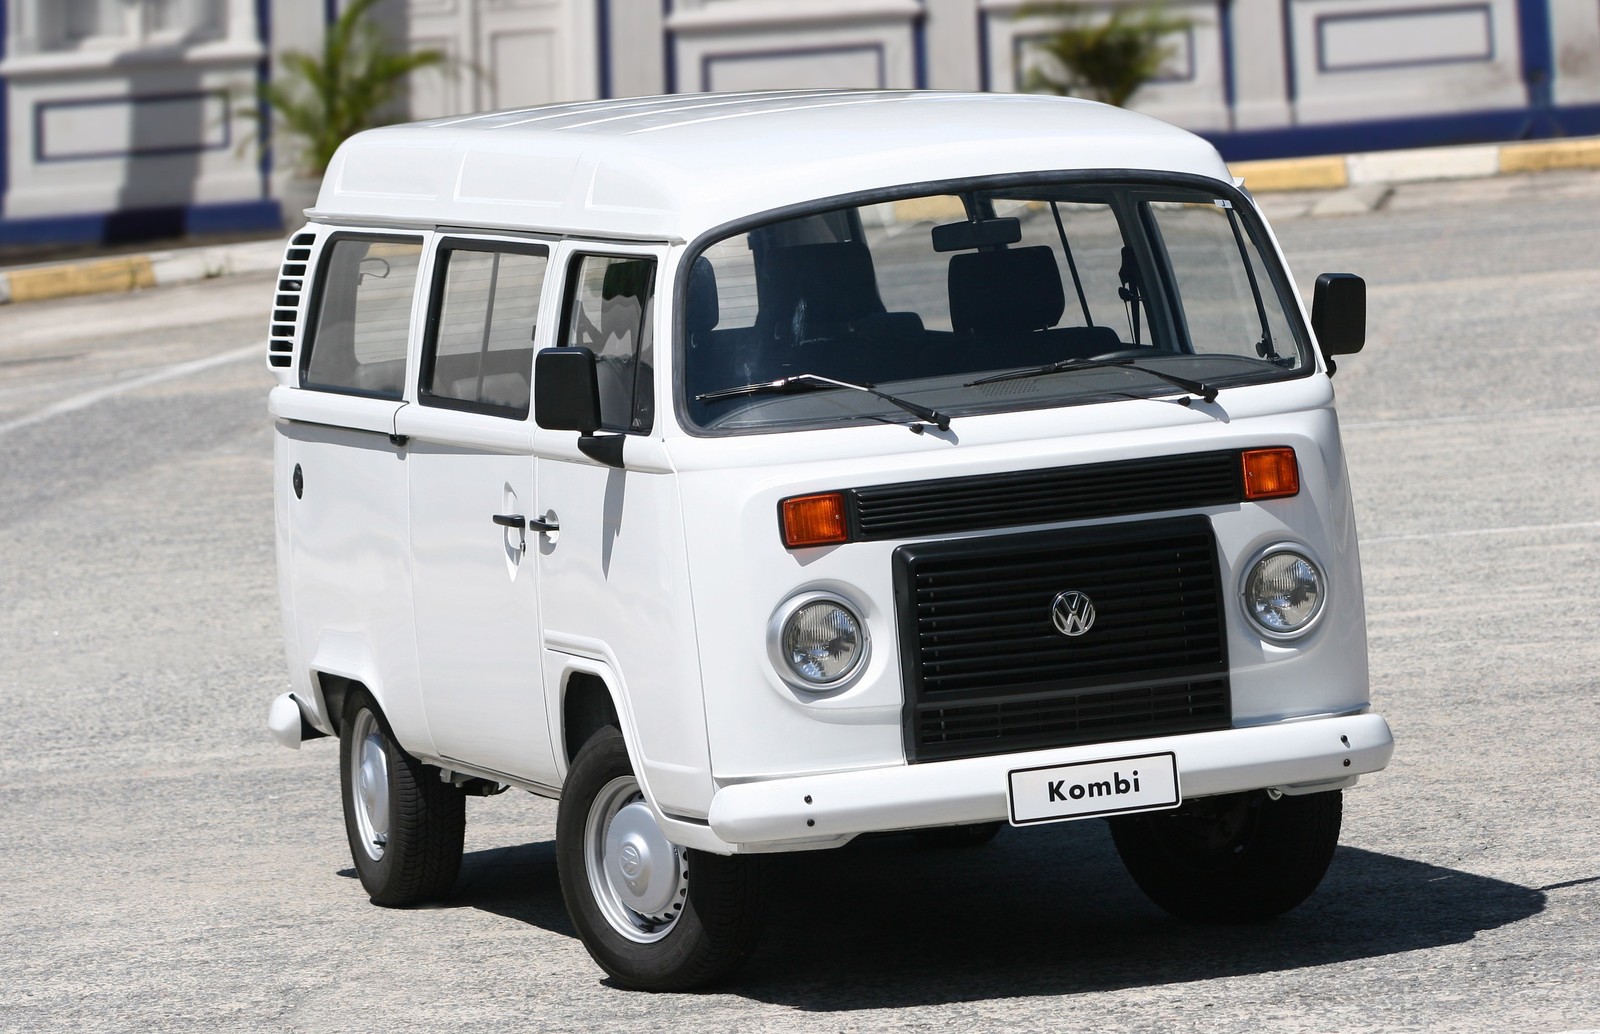 Kombi Total Flex,  modelo 2006 equipada com motor 1.4 - Foto divulgação